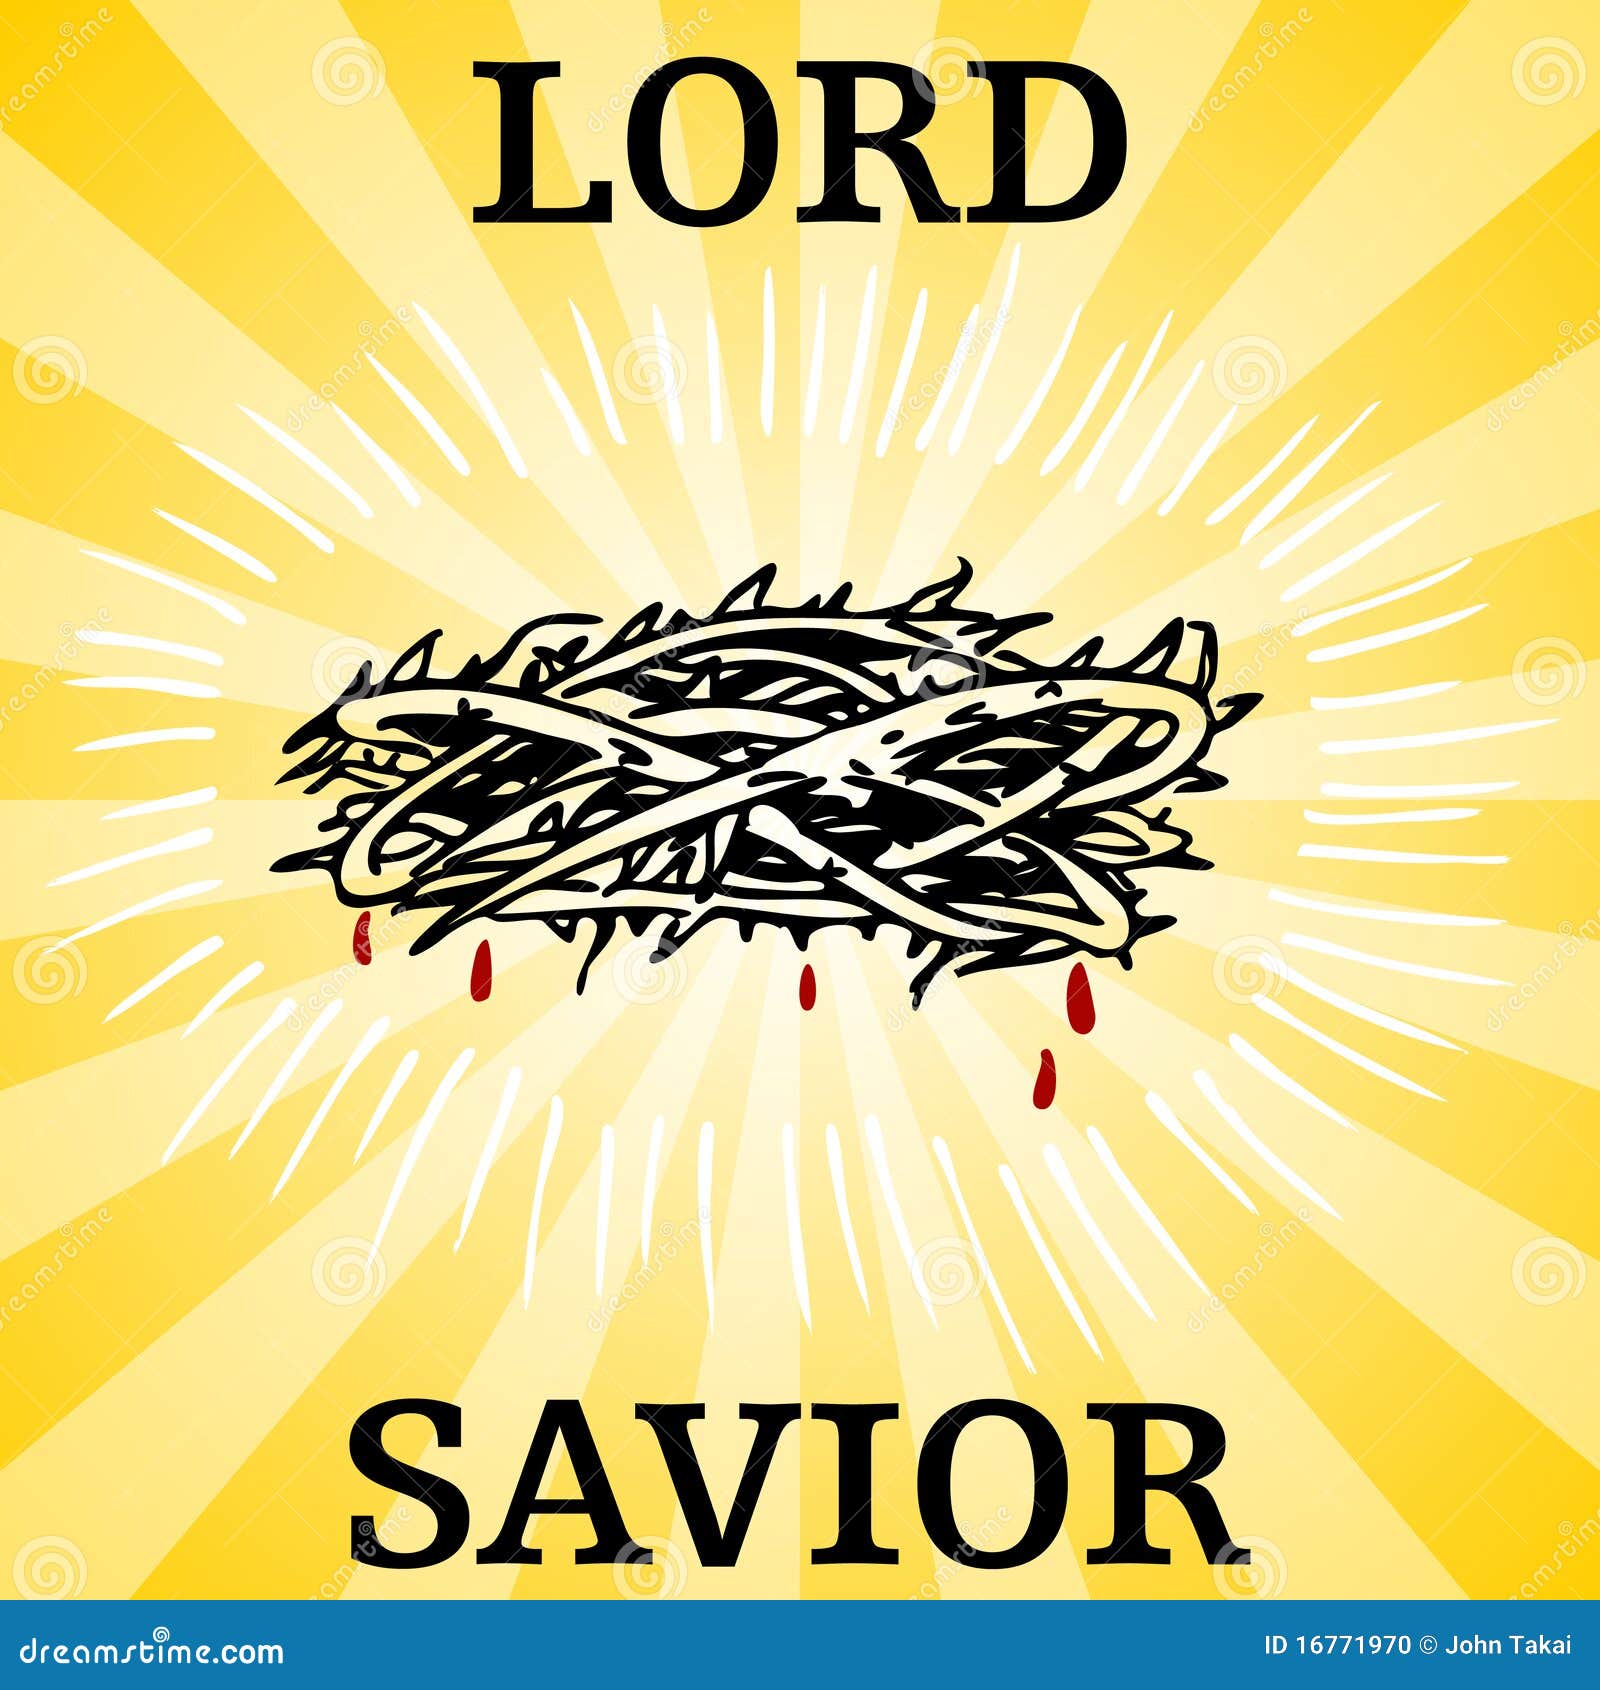 lord savior thorn crown